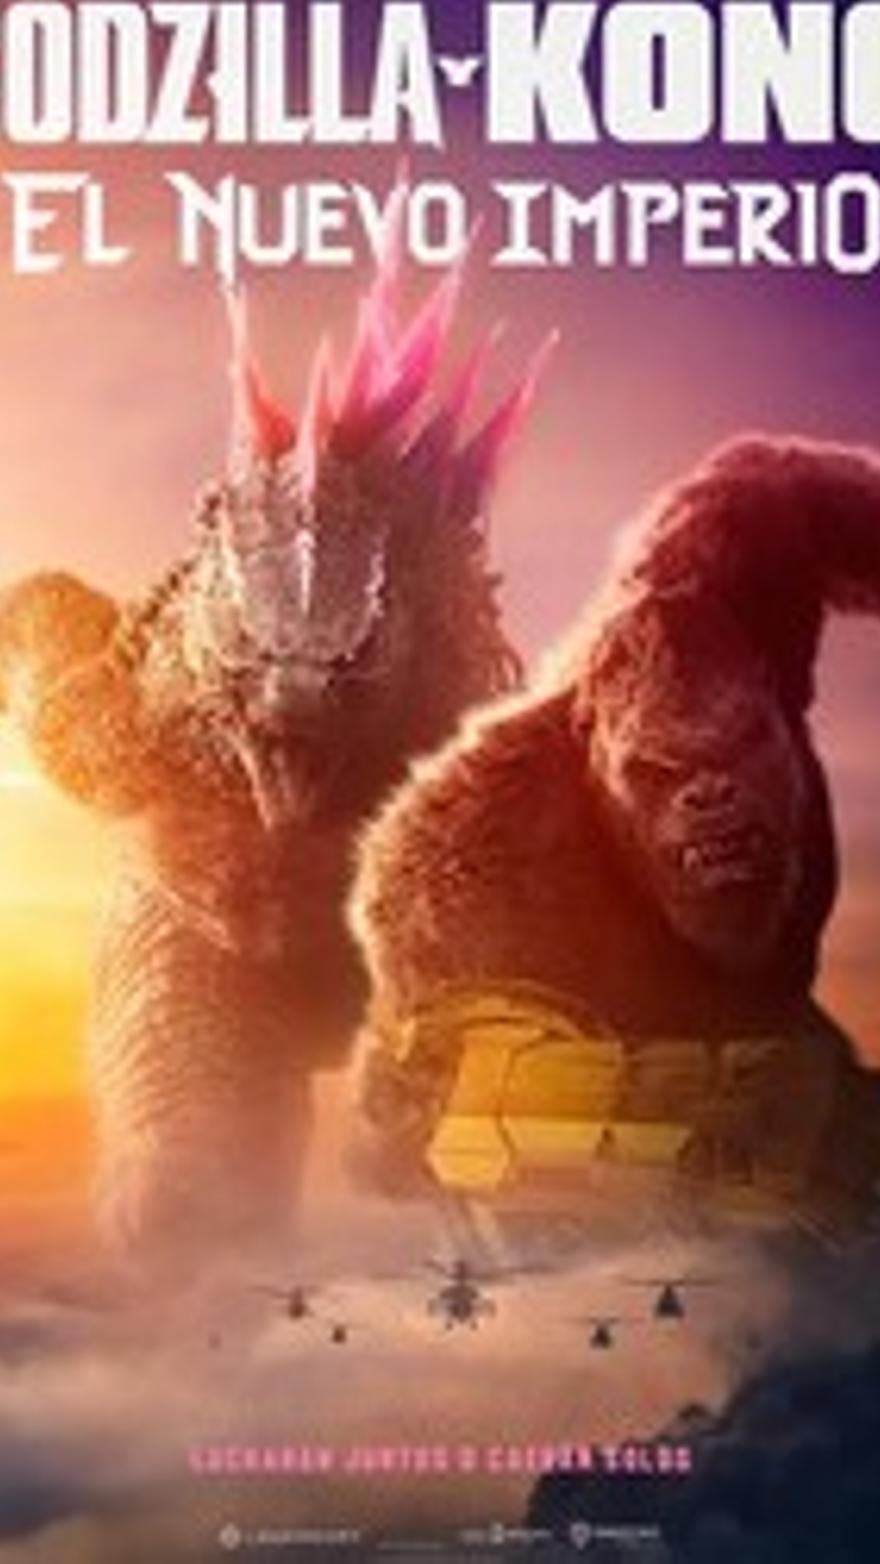 Godzilla y Kong: El nuevo imperio V.O.S.E.